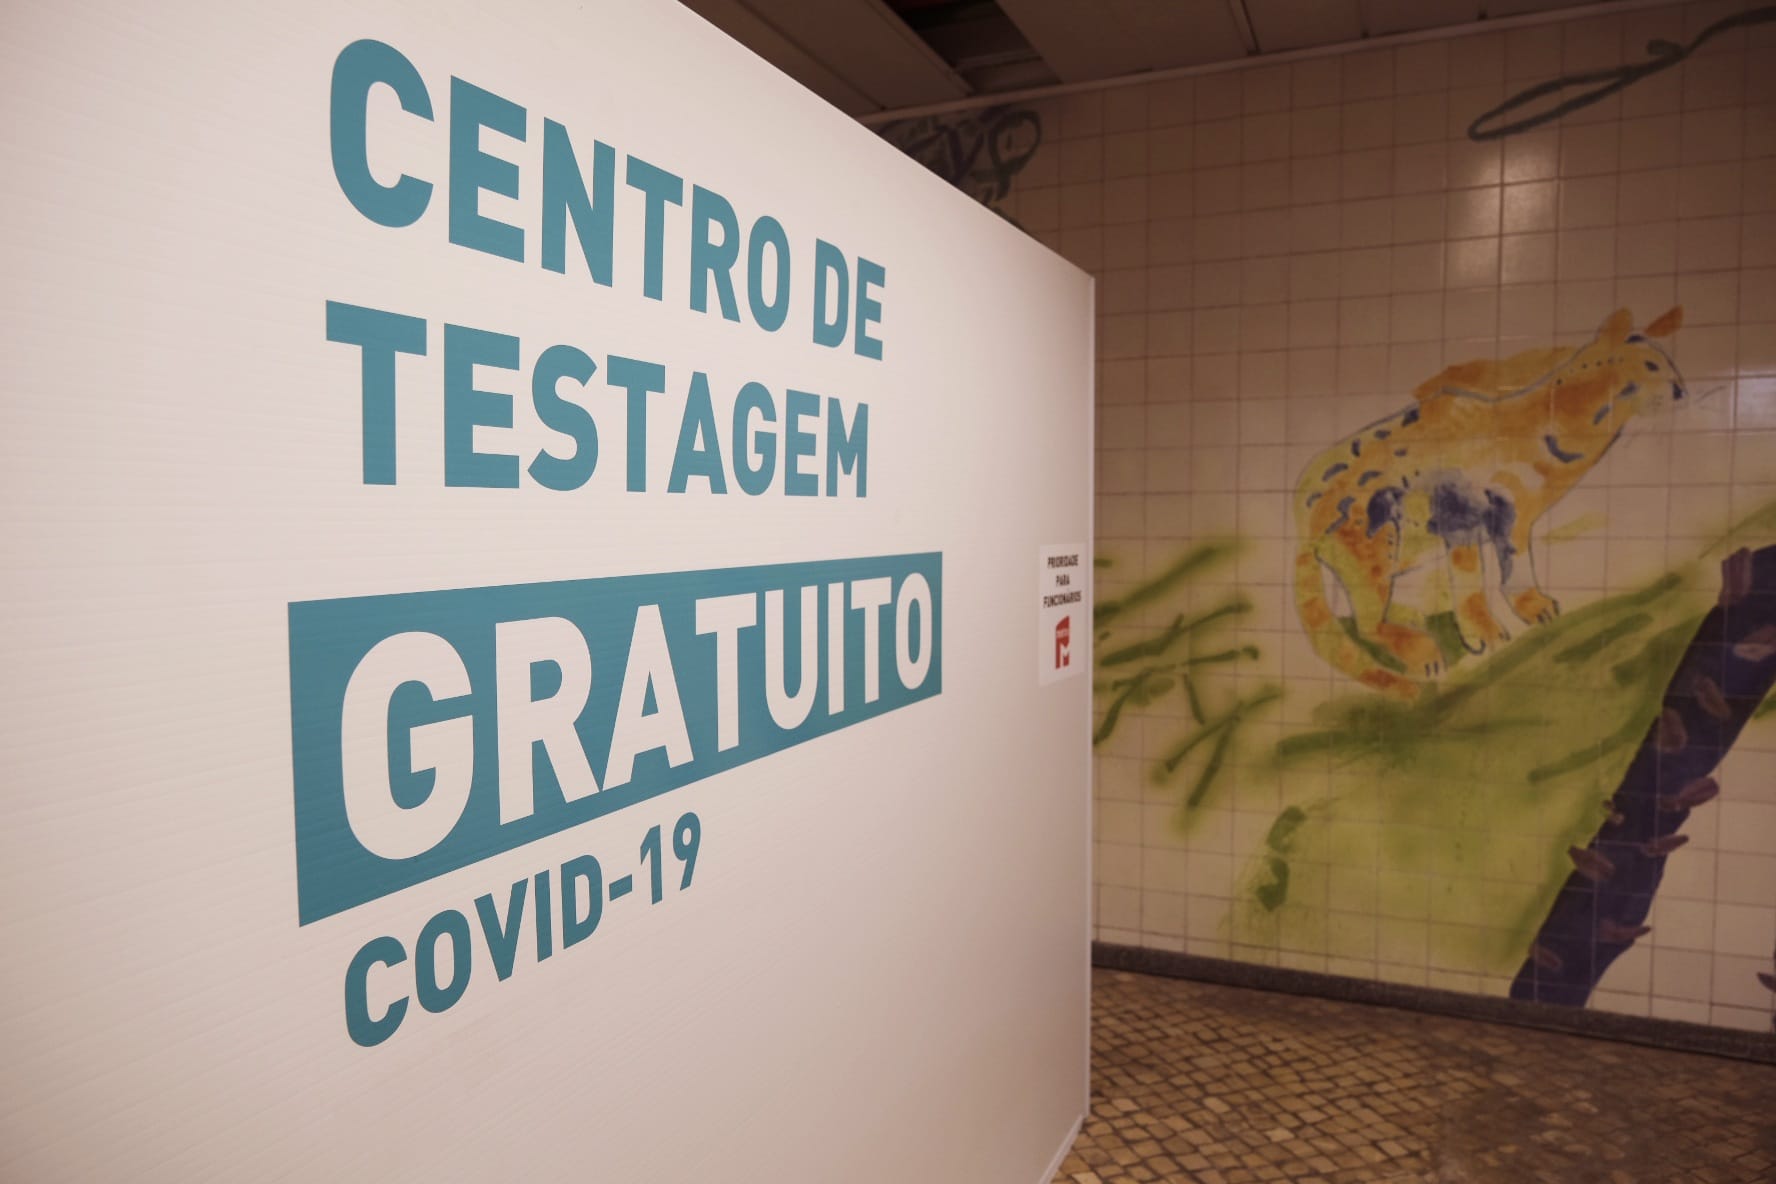 Novos postos de testagem gratuita à covid-19 em estações do Metro de Lisboa